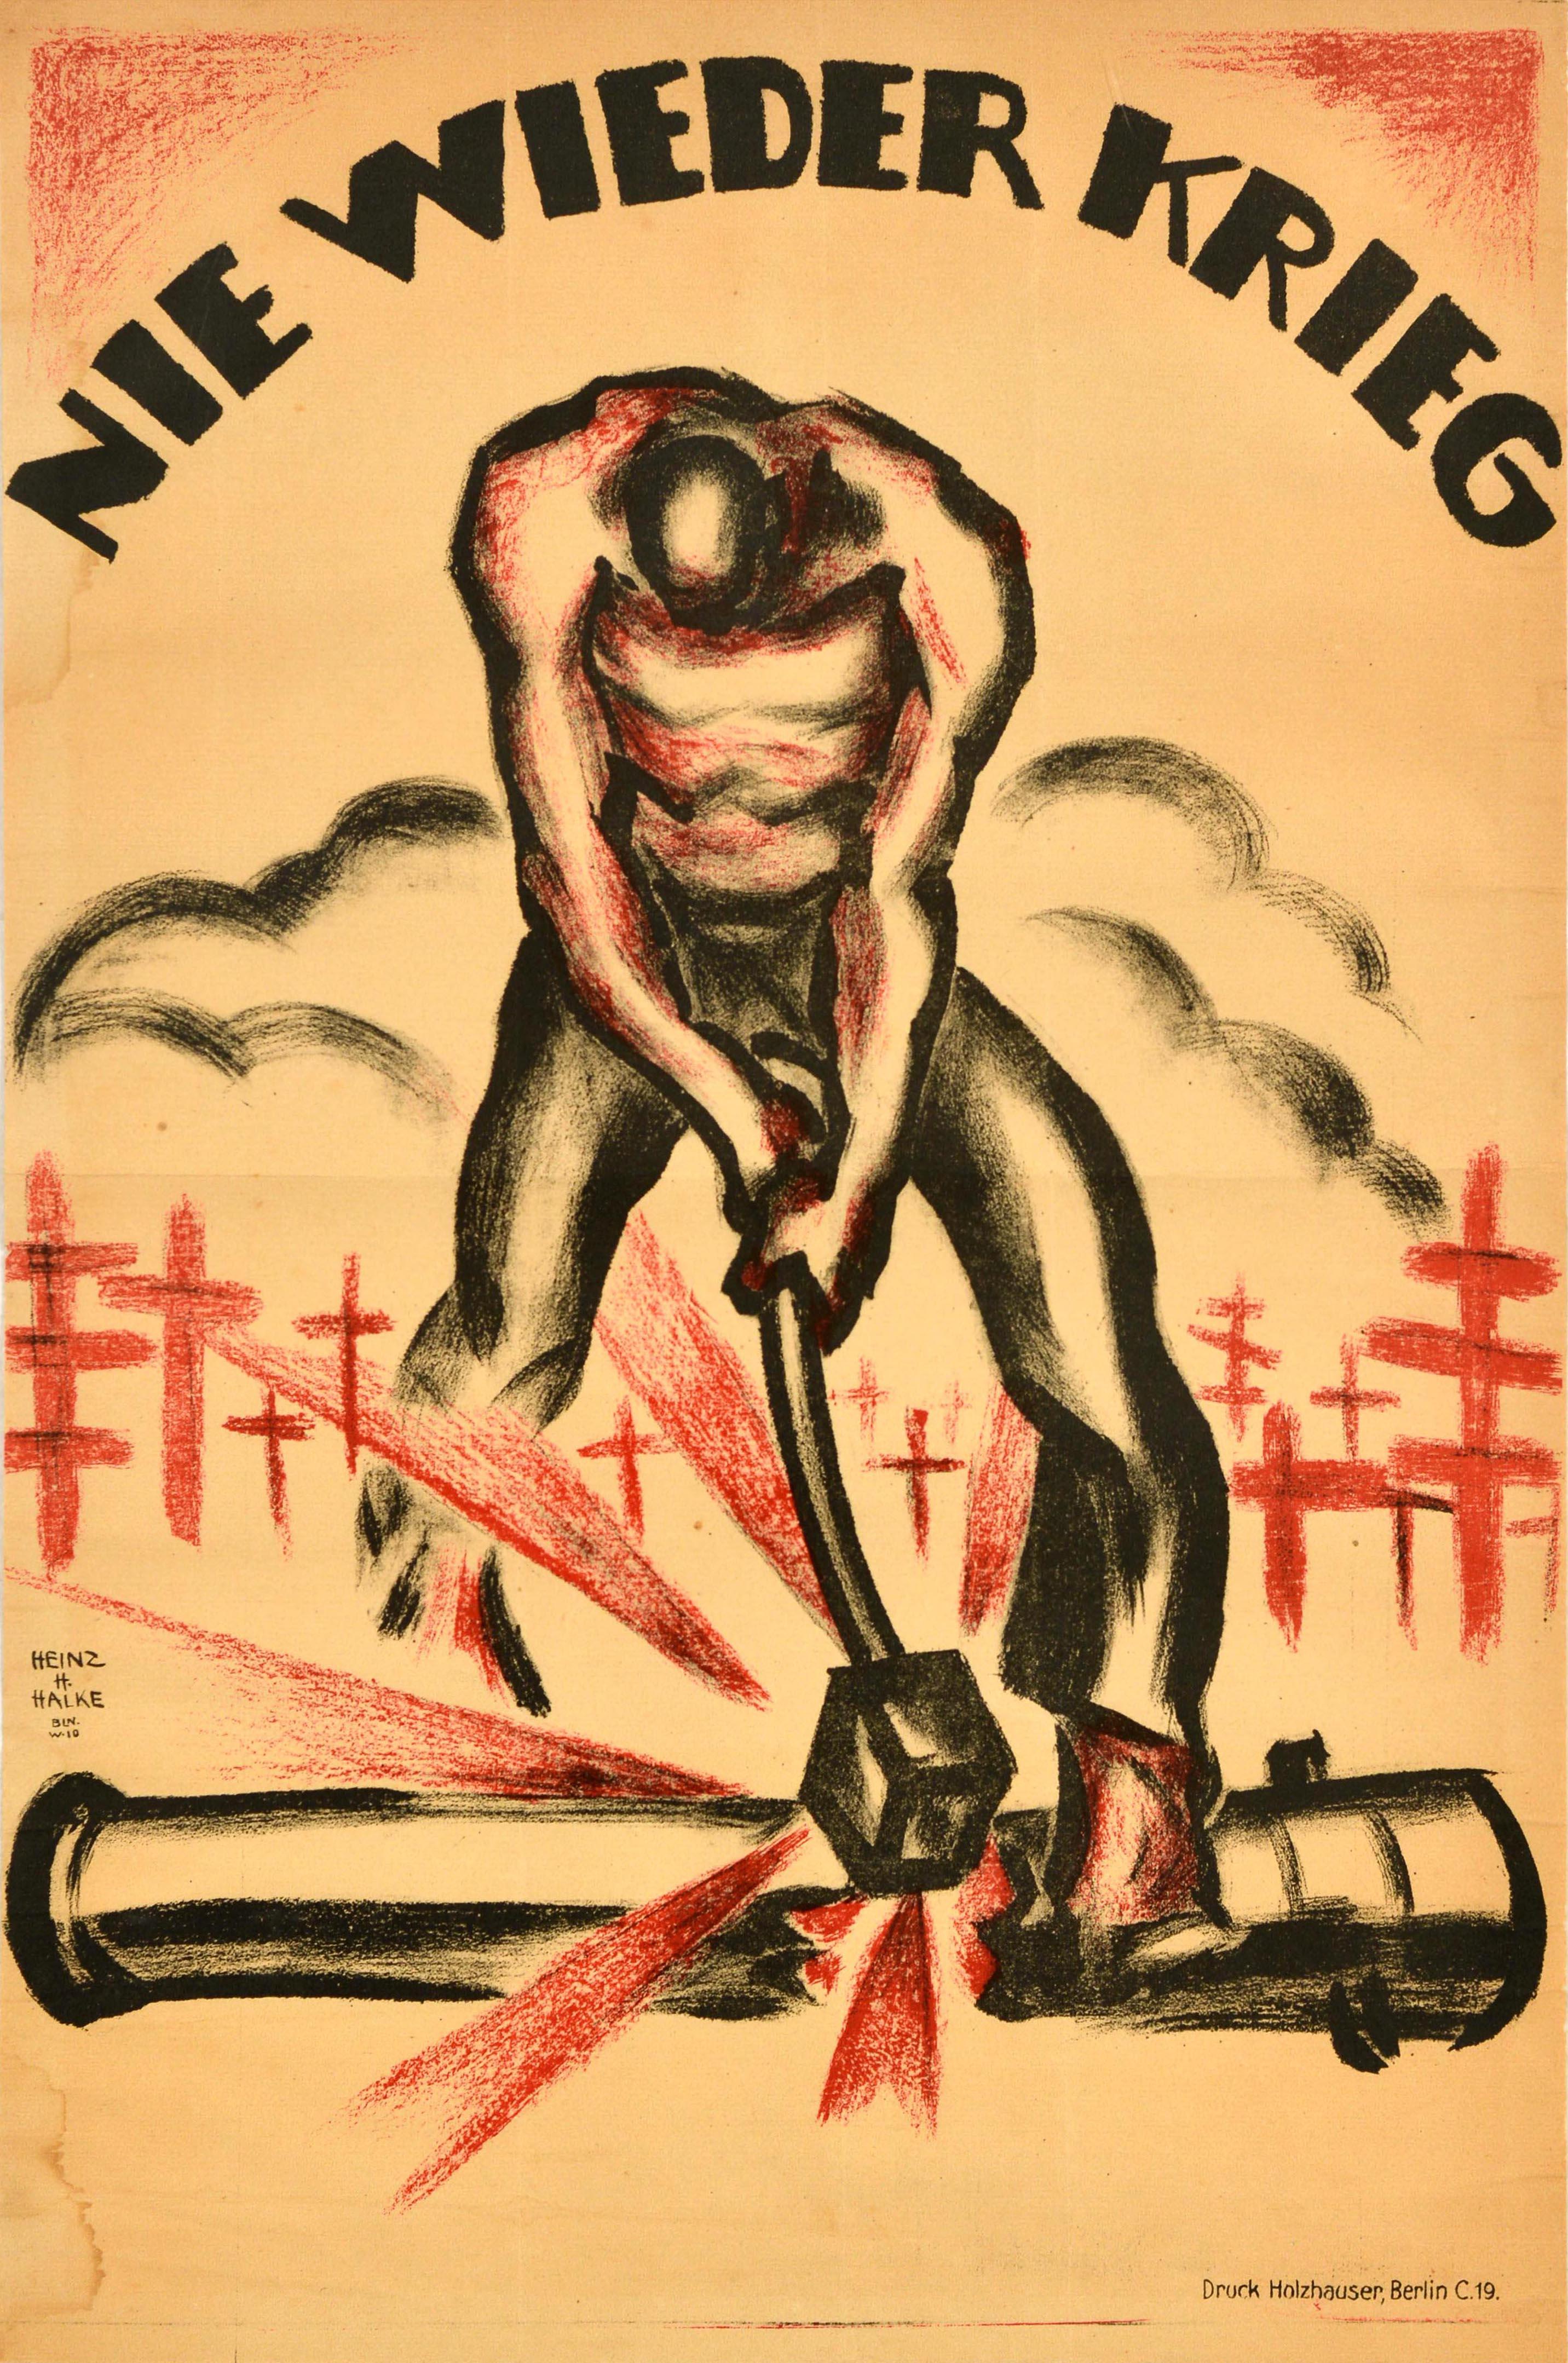 Heinz H Halke Print – Original Antikes Original-Poster aus dem Ersten Weltkrieg, Nie Wieder Krieg, Never Again, Kriegsgrave, Kanonen